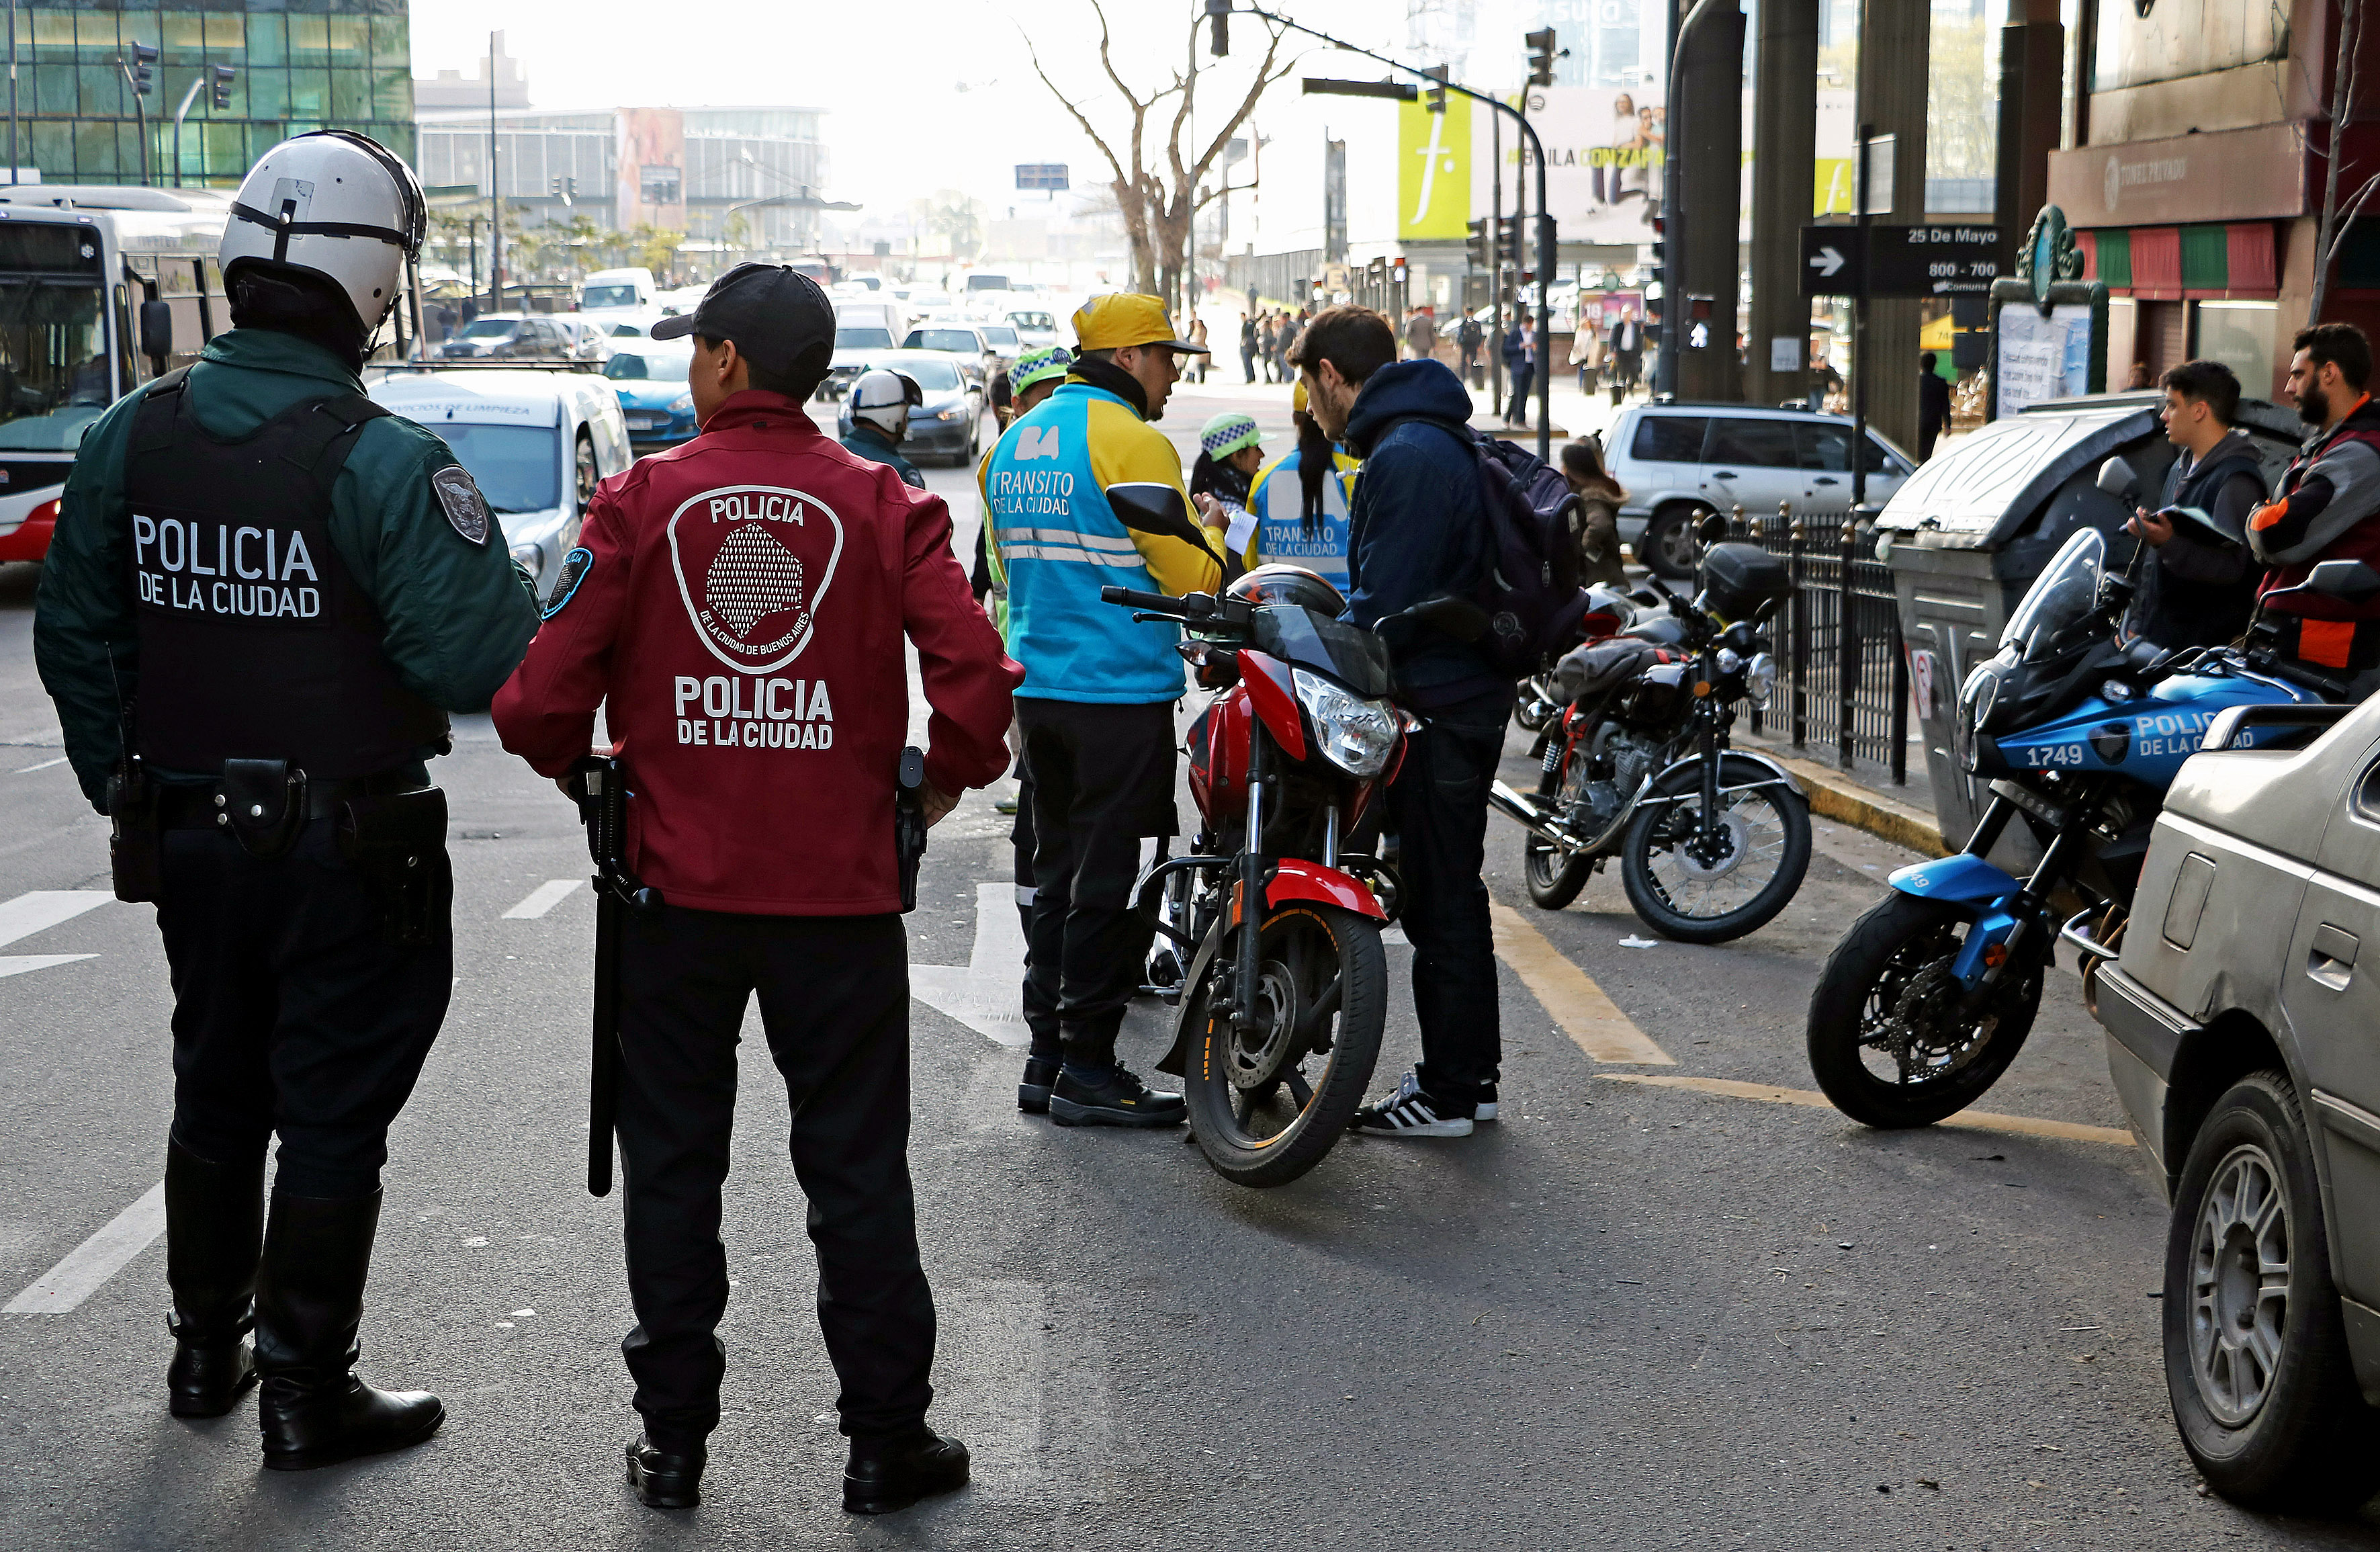 La Policía de la Ciudad secuestró casi 11 mil motos en los últimos diez meses